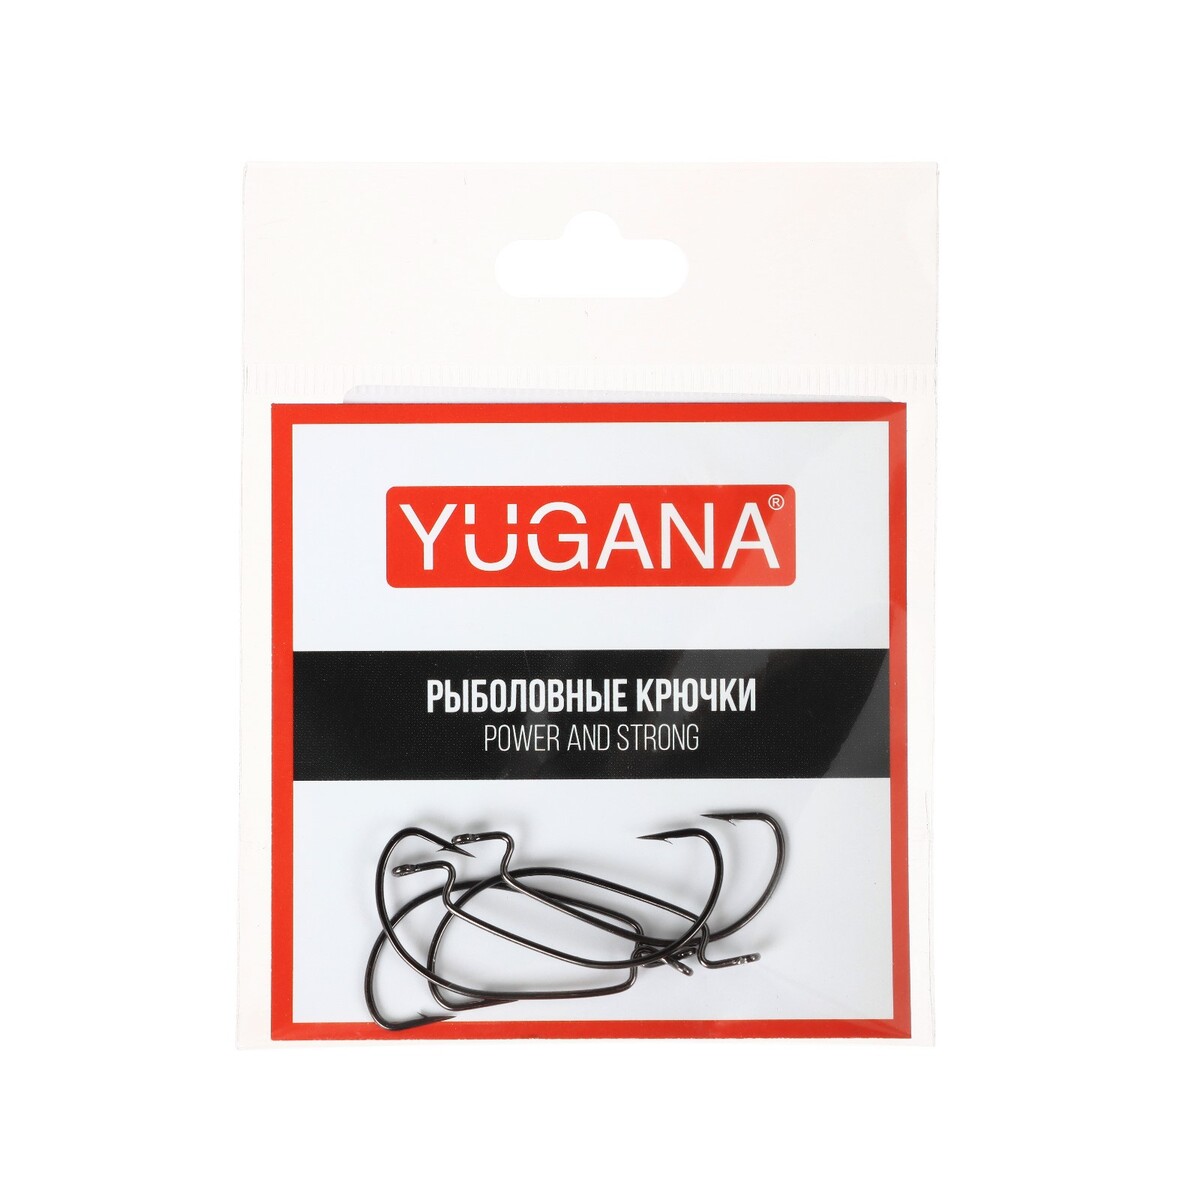   yugana o shaughnessy worm,   4, 5 